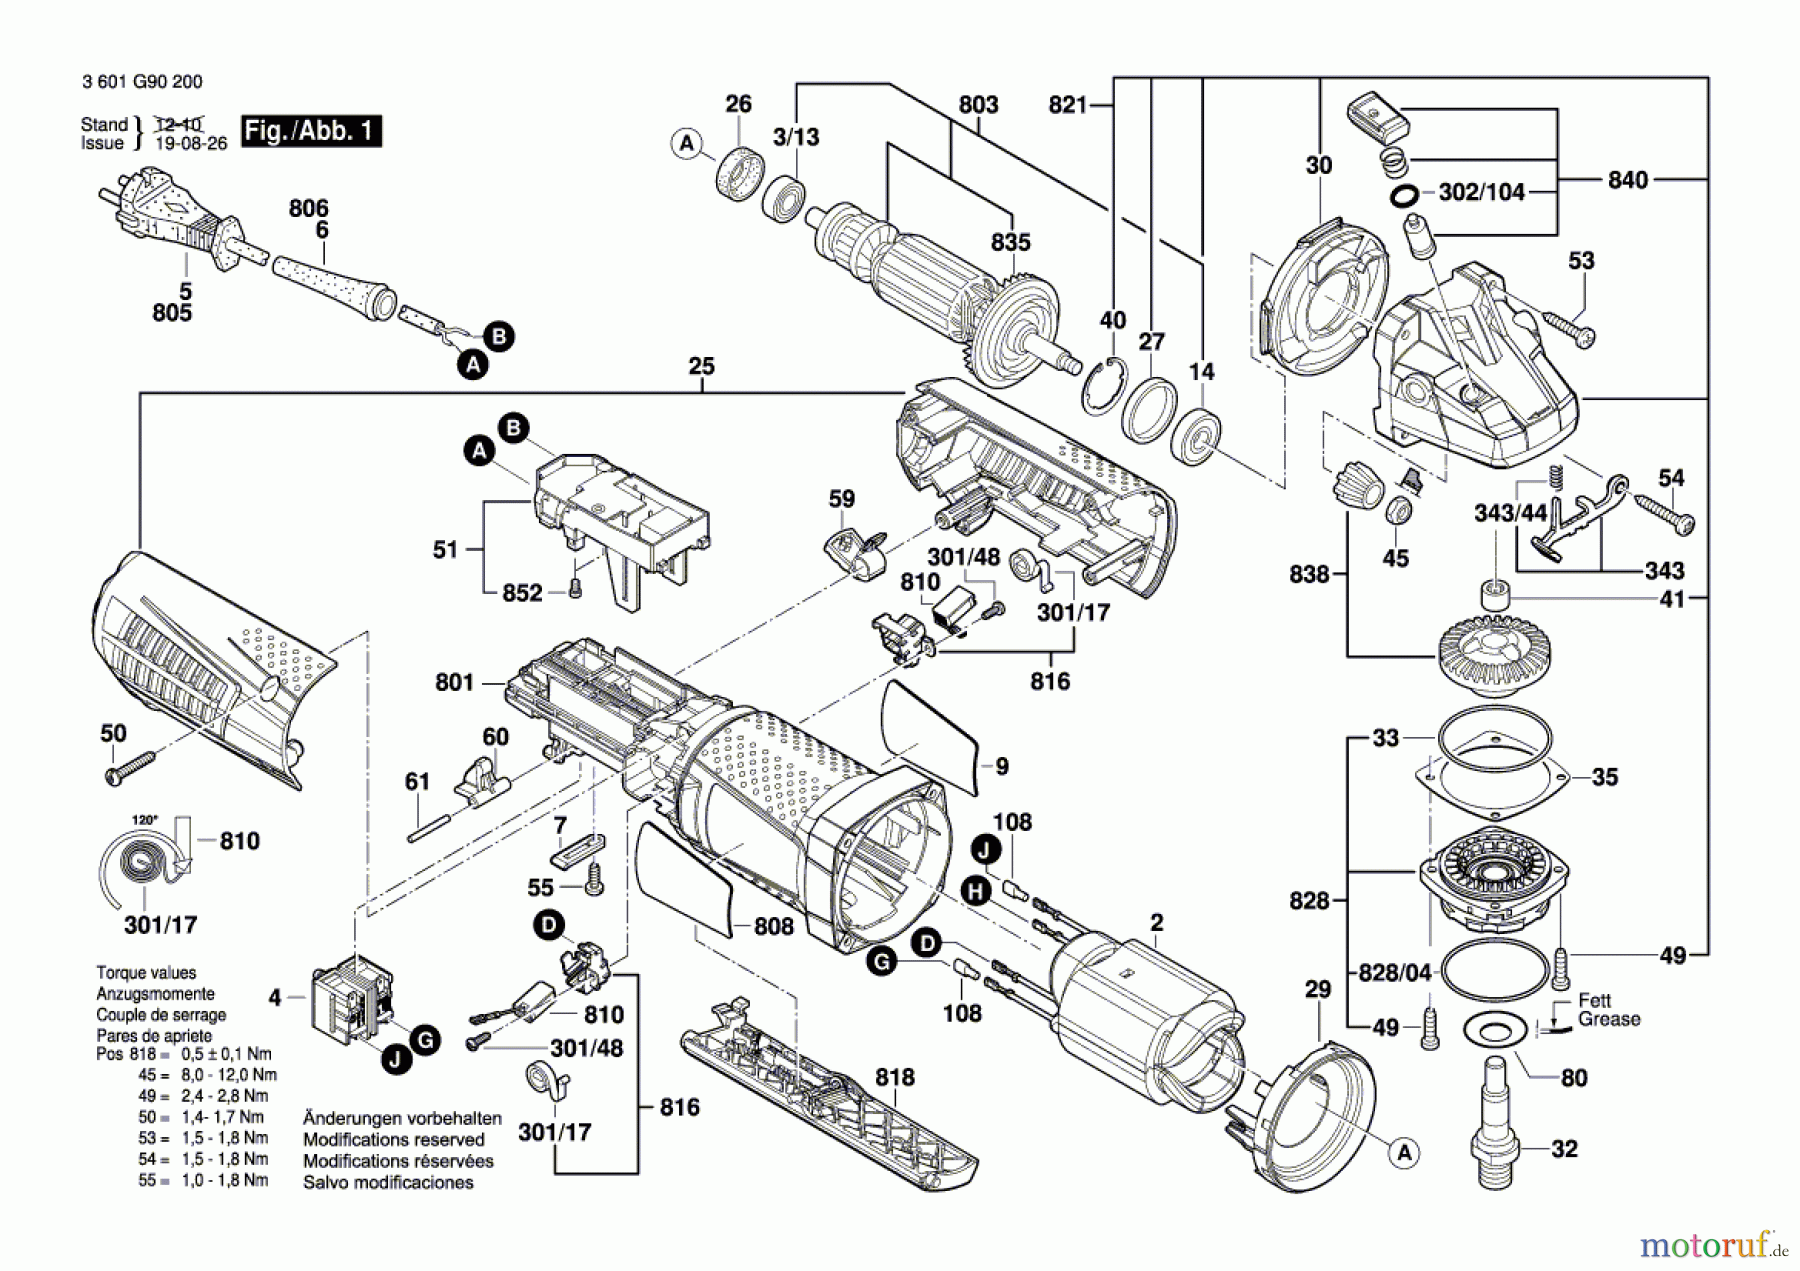  Bosch Werkzeug Winkelschleifer GWS 9-115 P Seite 1